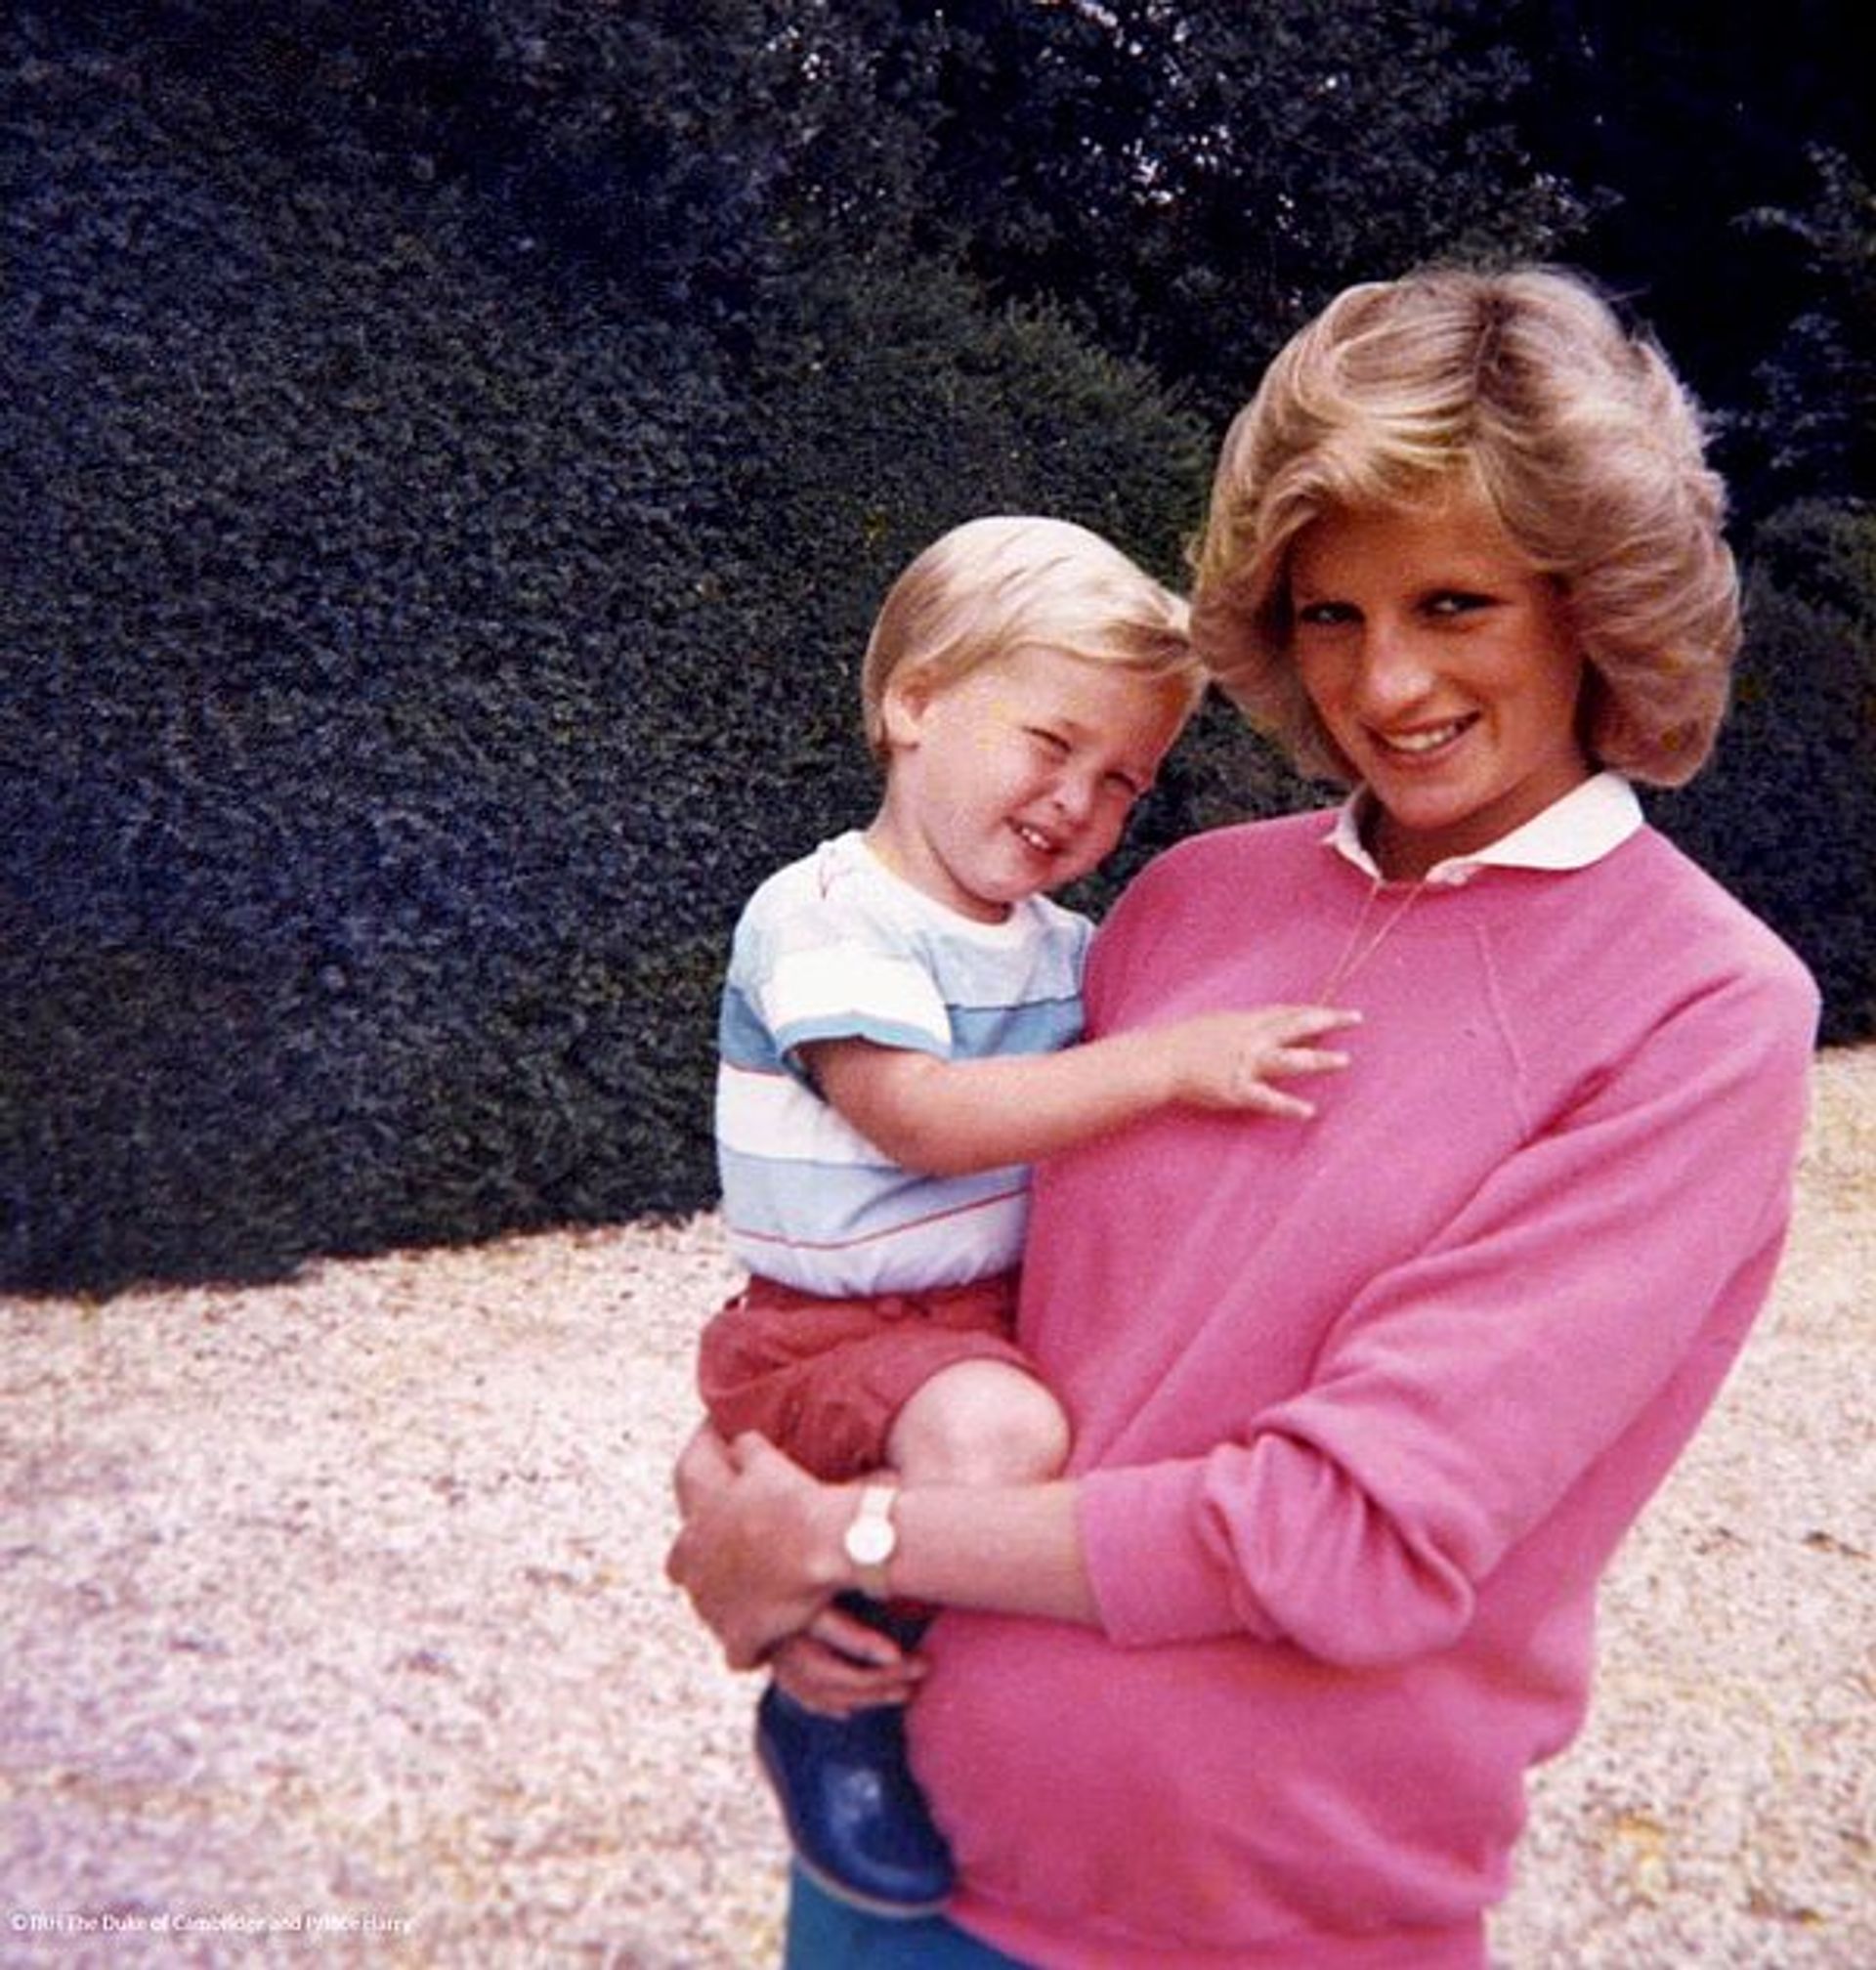 Prinses Diana met prins William op haar heup en prins Harry in haar buik